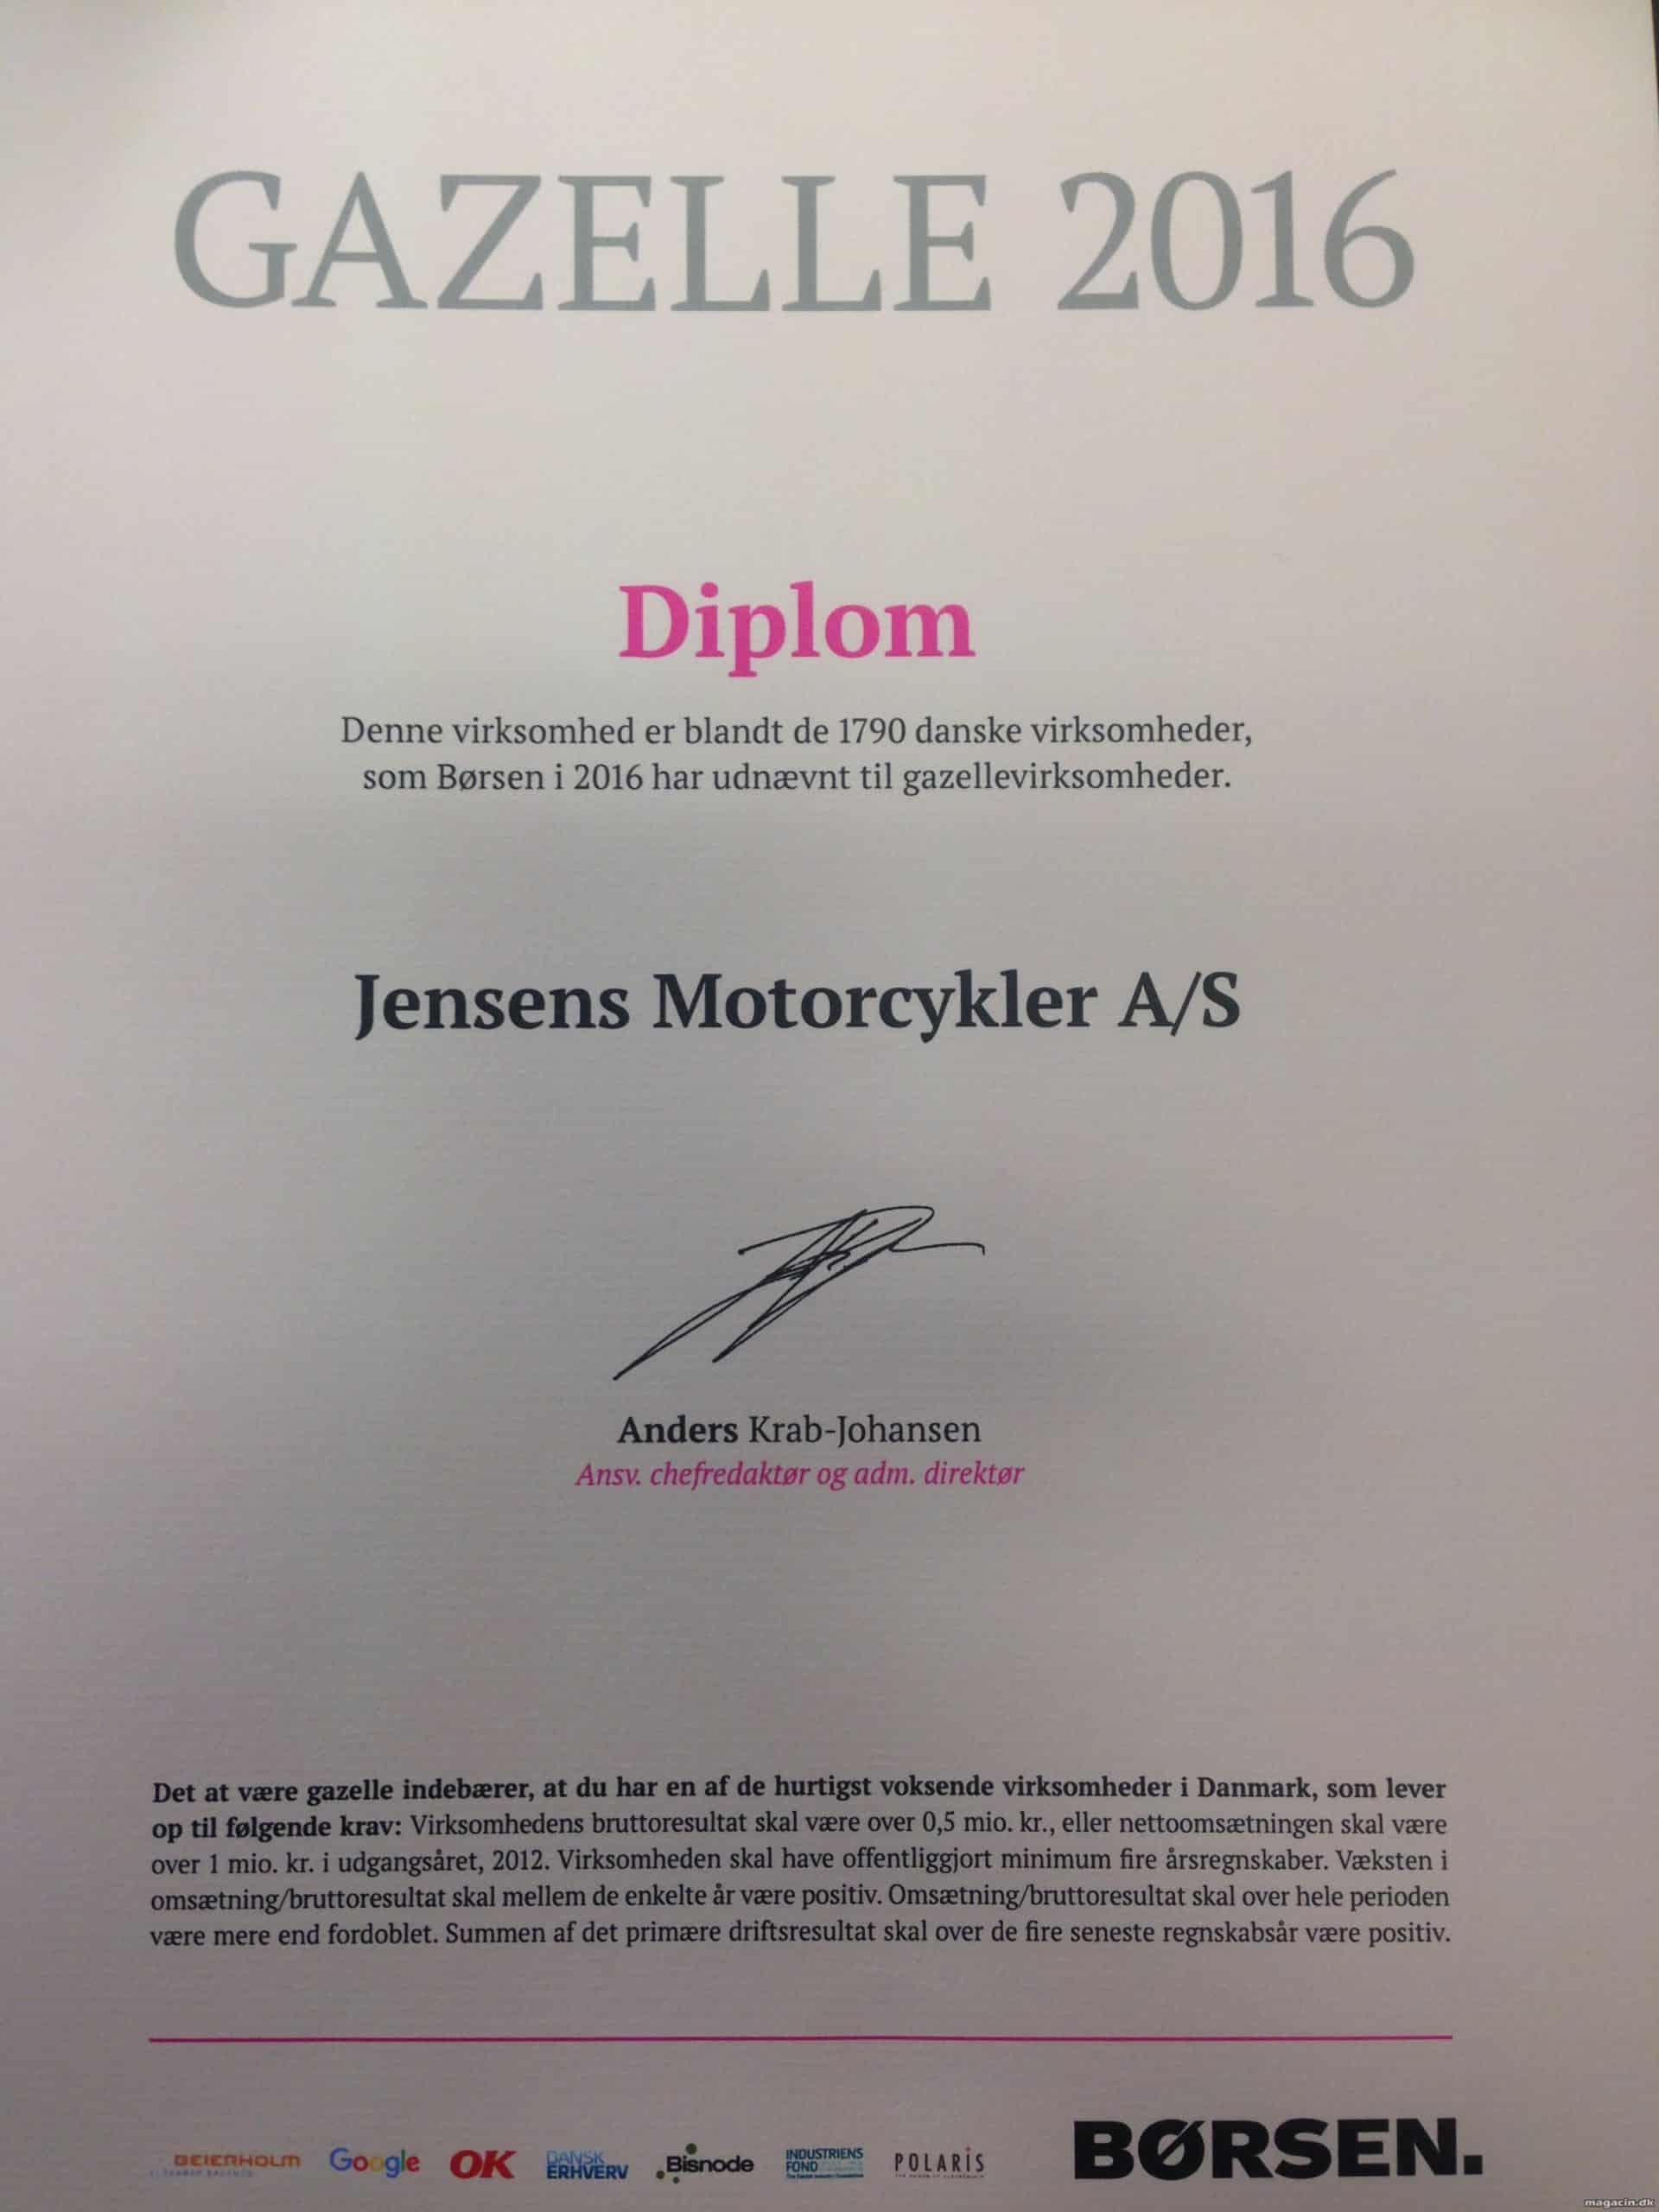 Jensens Motorcykler kåret som Gazelle virksomhed